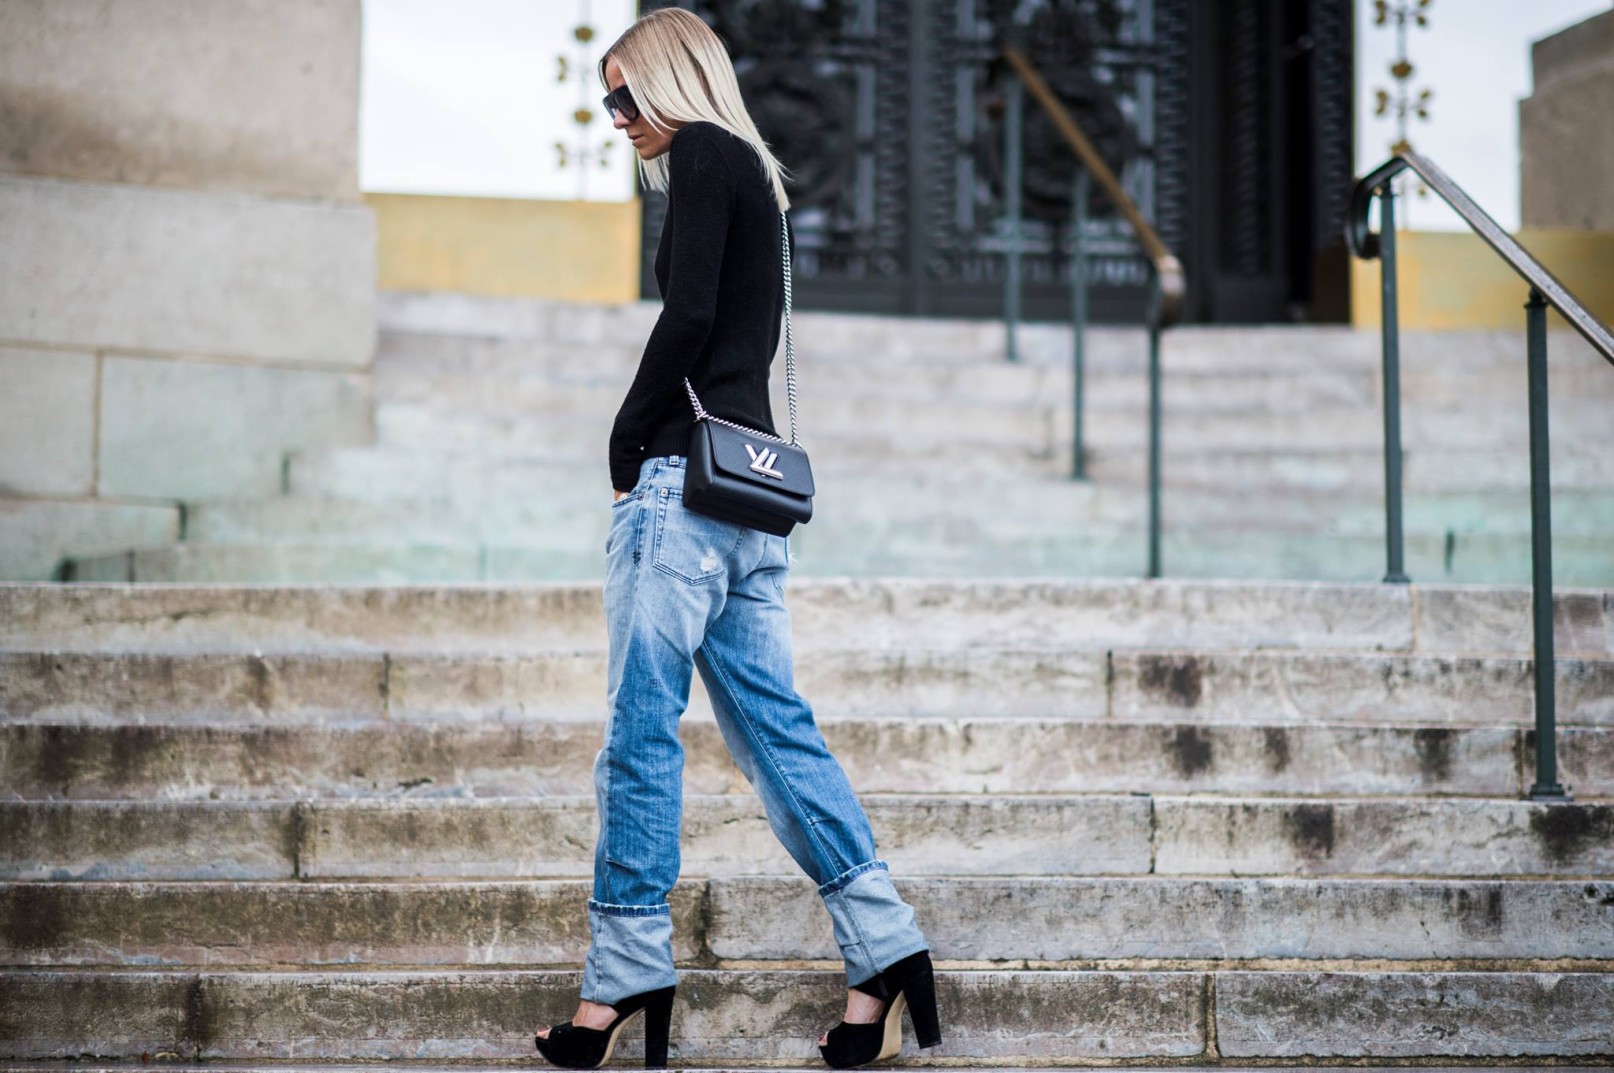 Celine is wearing boyfriend jeans Paris Fashion Week | Envelope